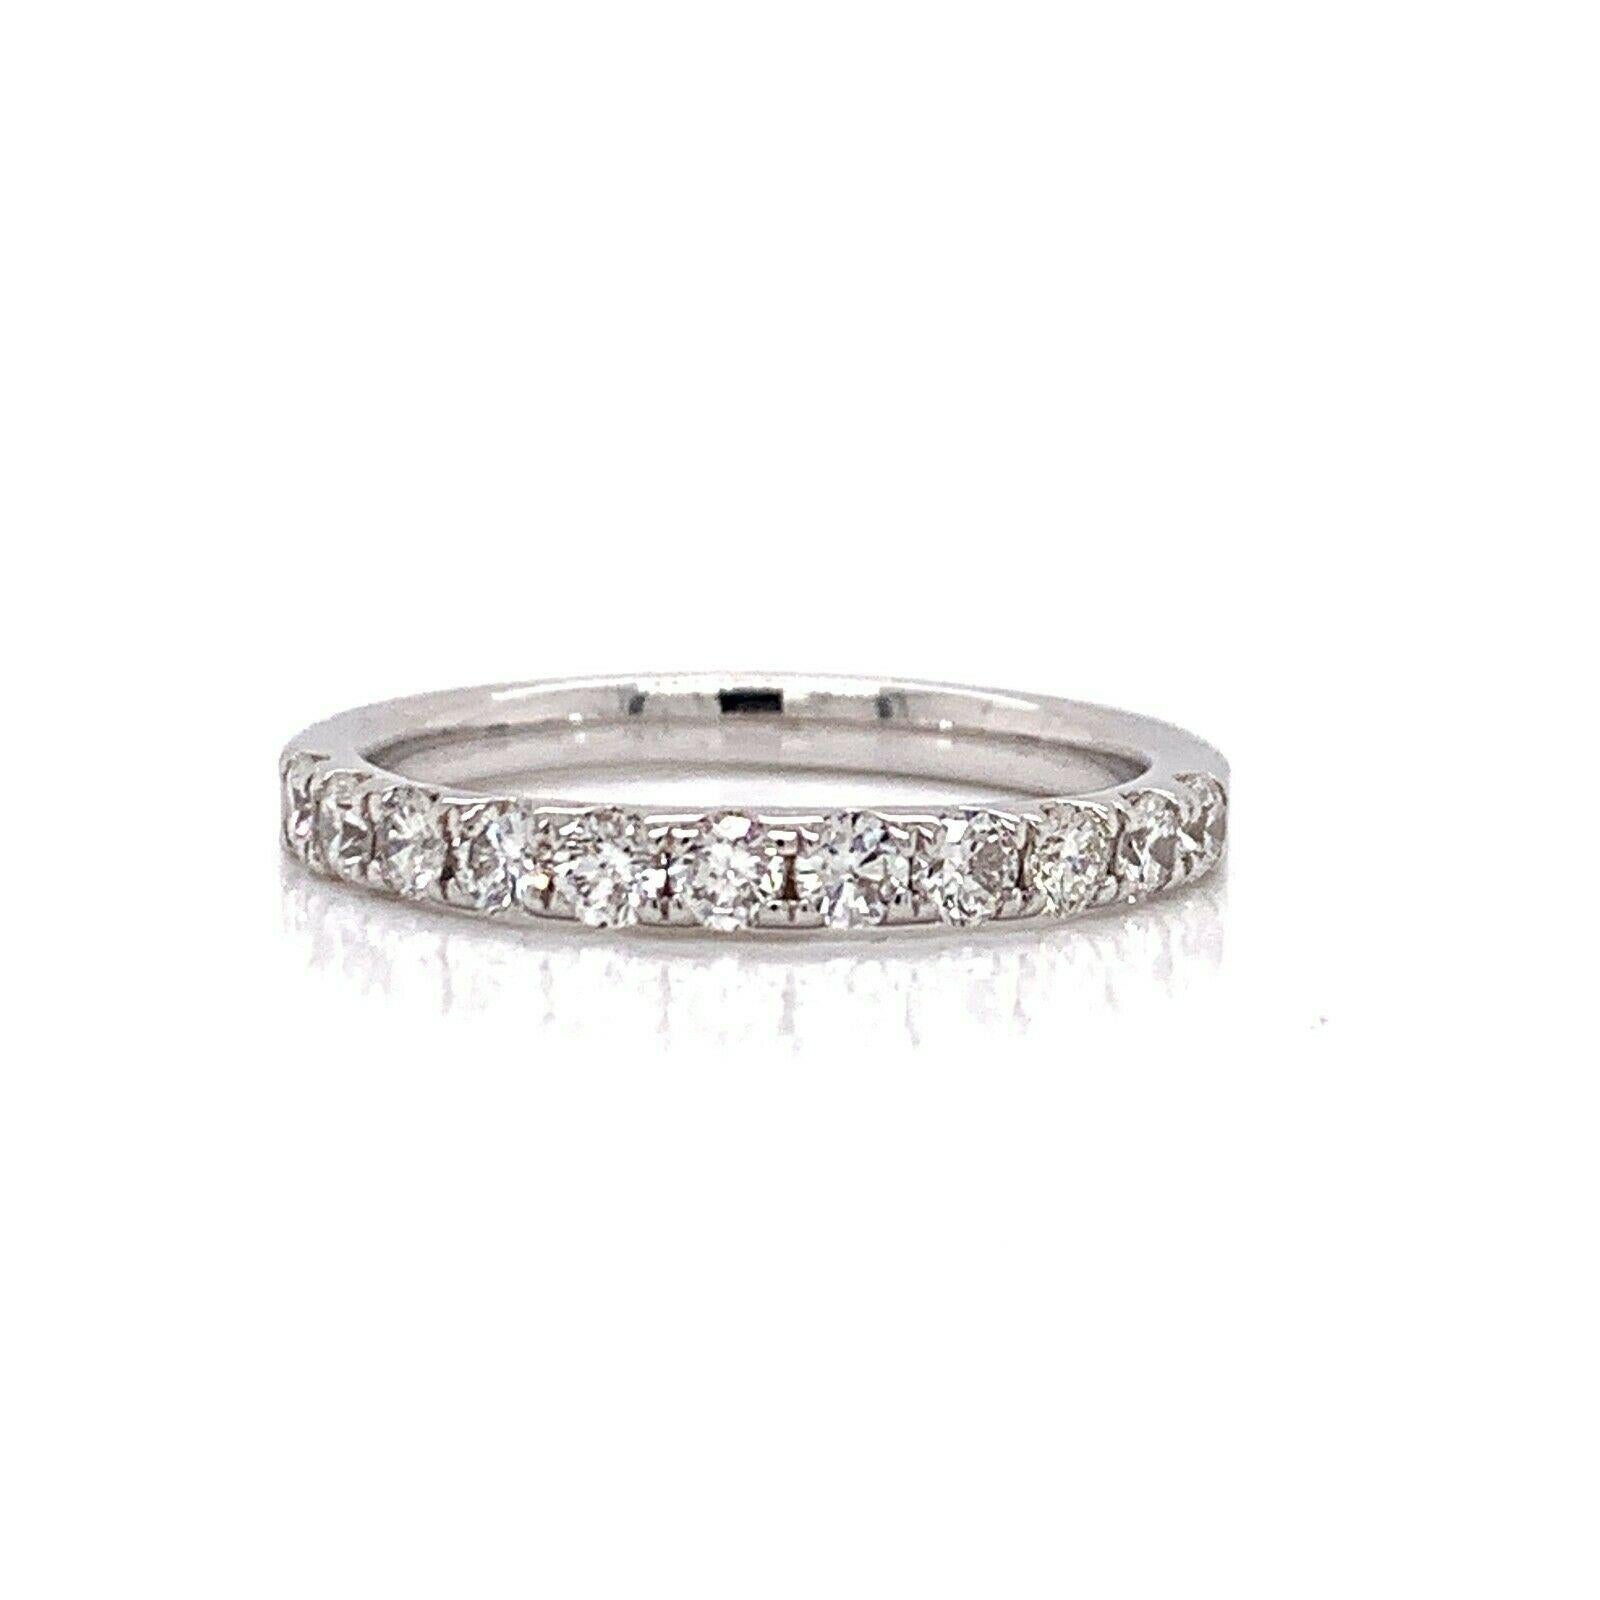 Round Cut 14 Karat White Gold and 0.61 Carat Diamond Wedding Band Ring